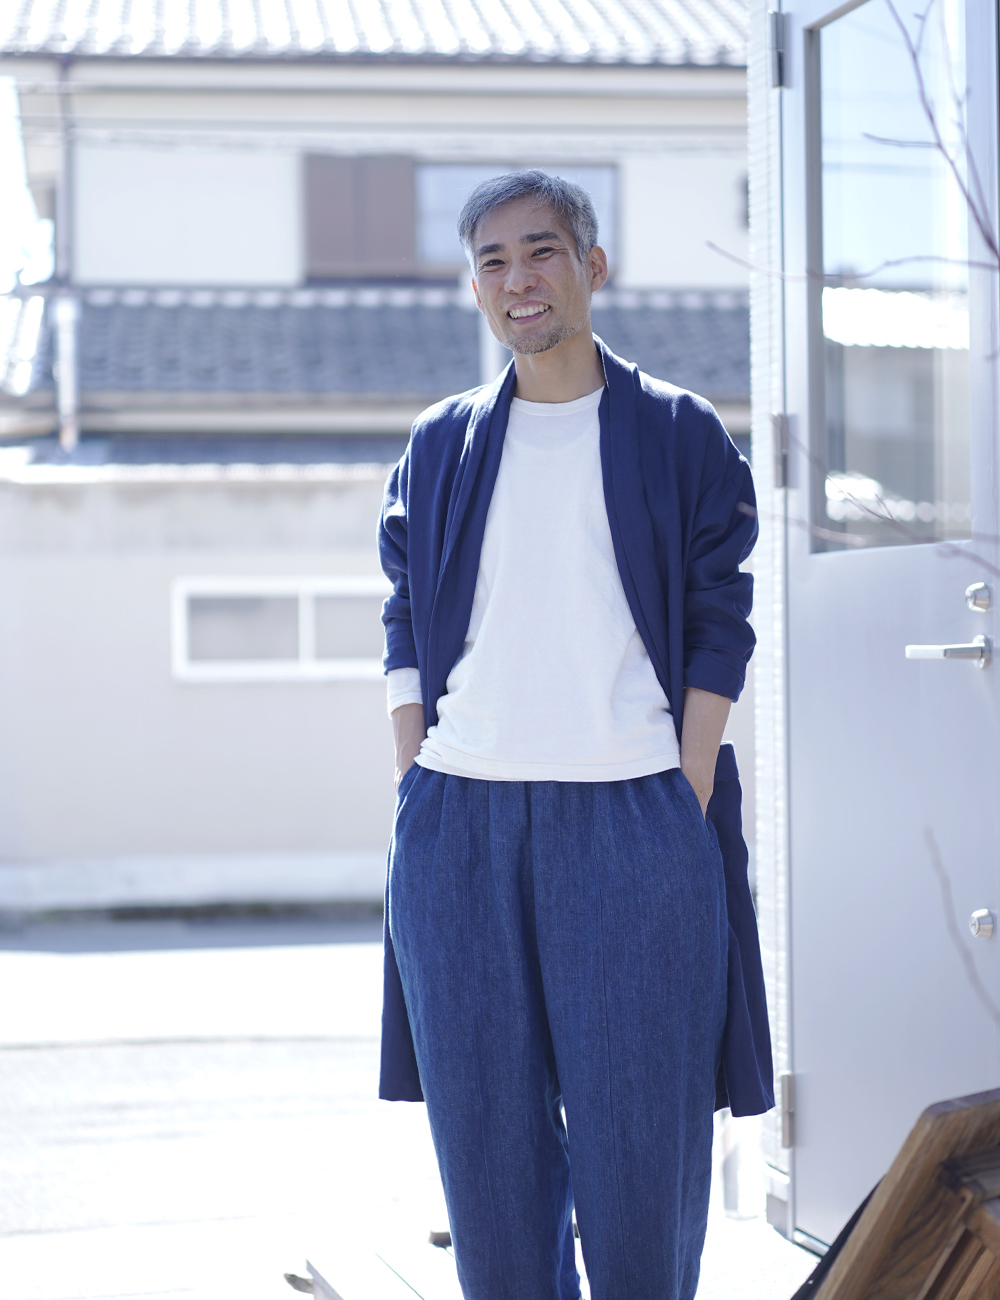 【プレミアム】Linen Jacket ショールカラー /ブルーニュイ h022m-bln2